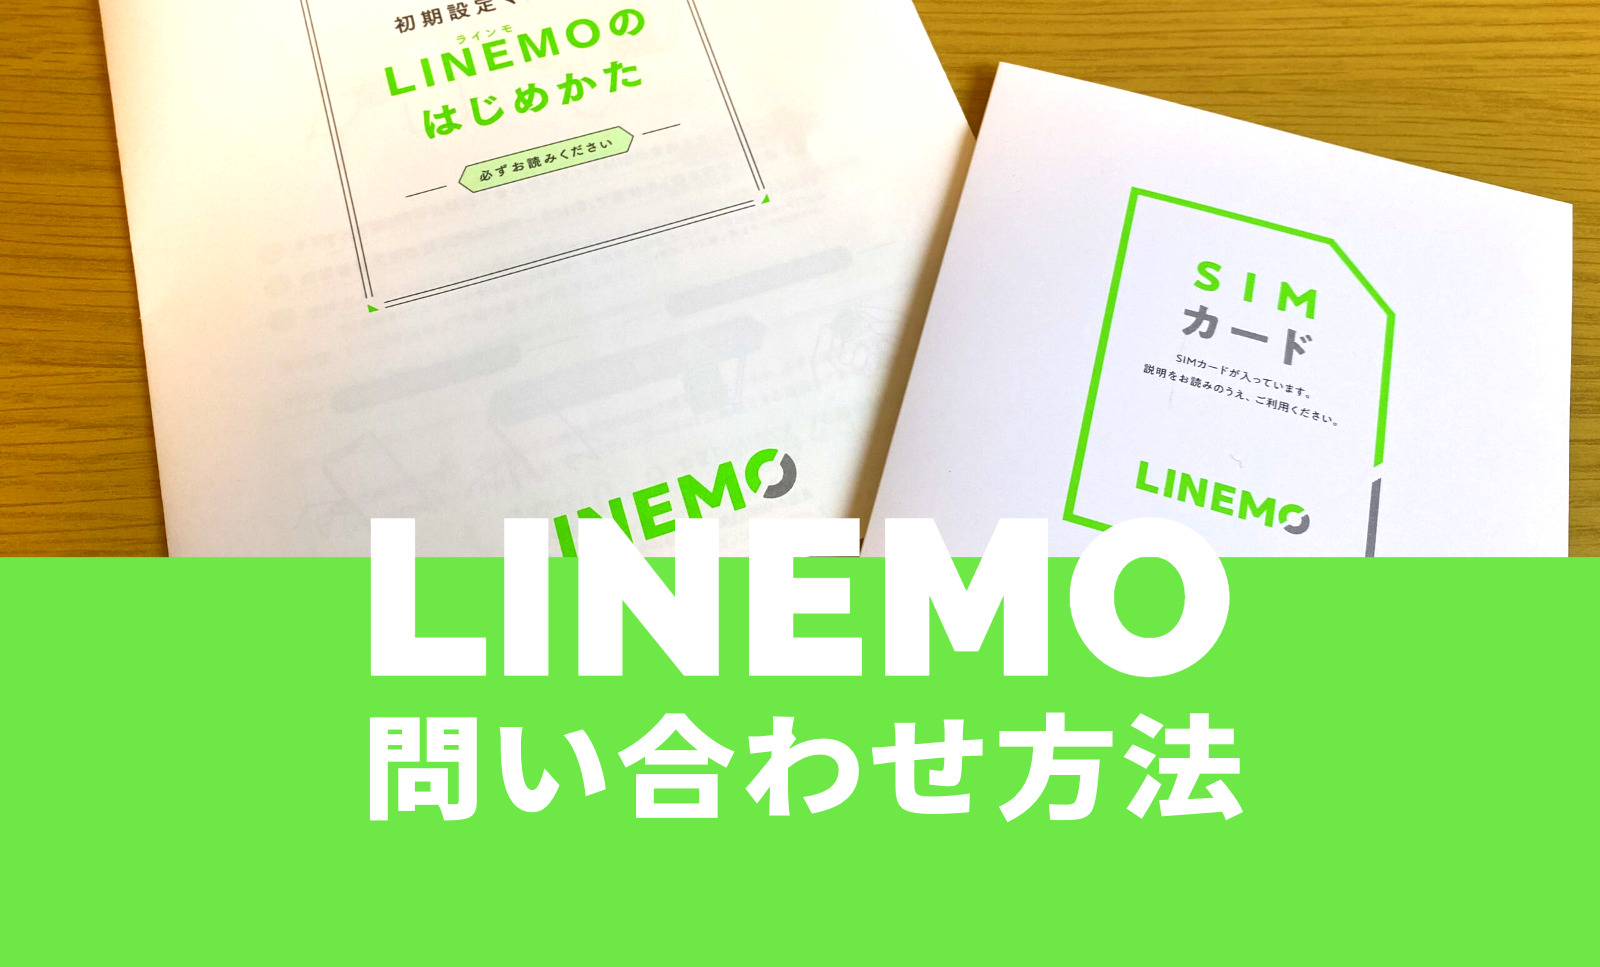 LINEMO(ラインモ)の問い合わせ方法を解説。のサムネイル画像